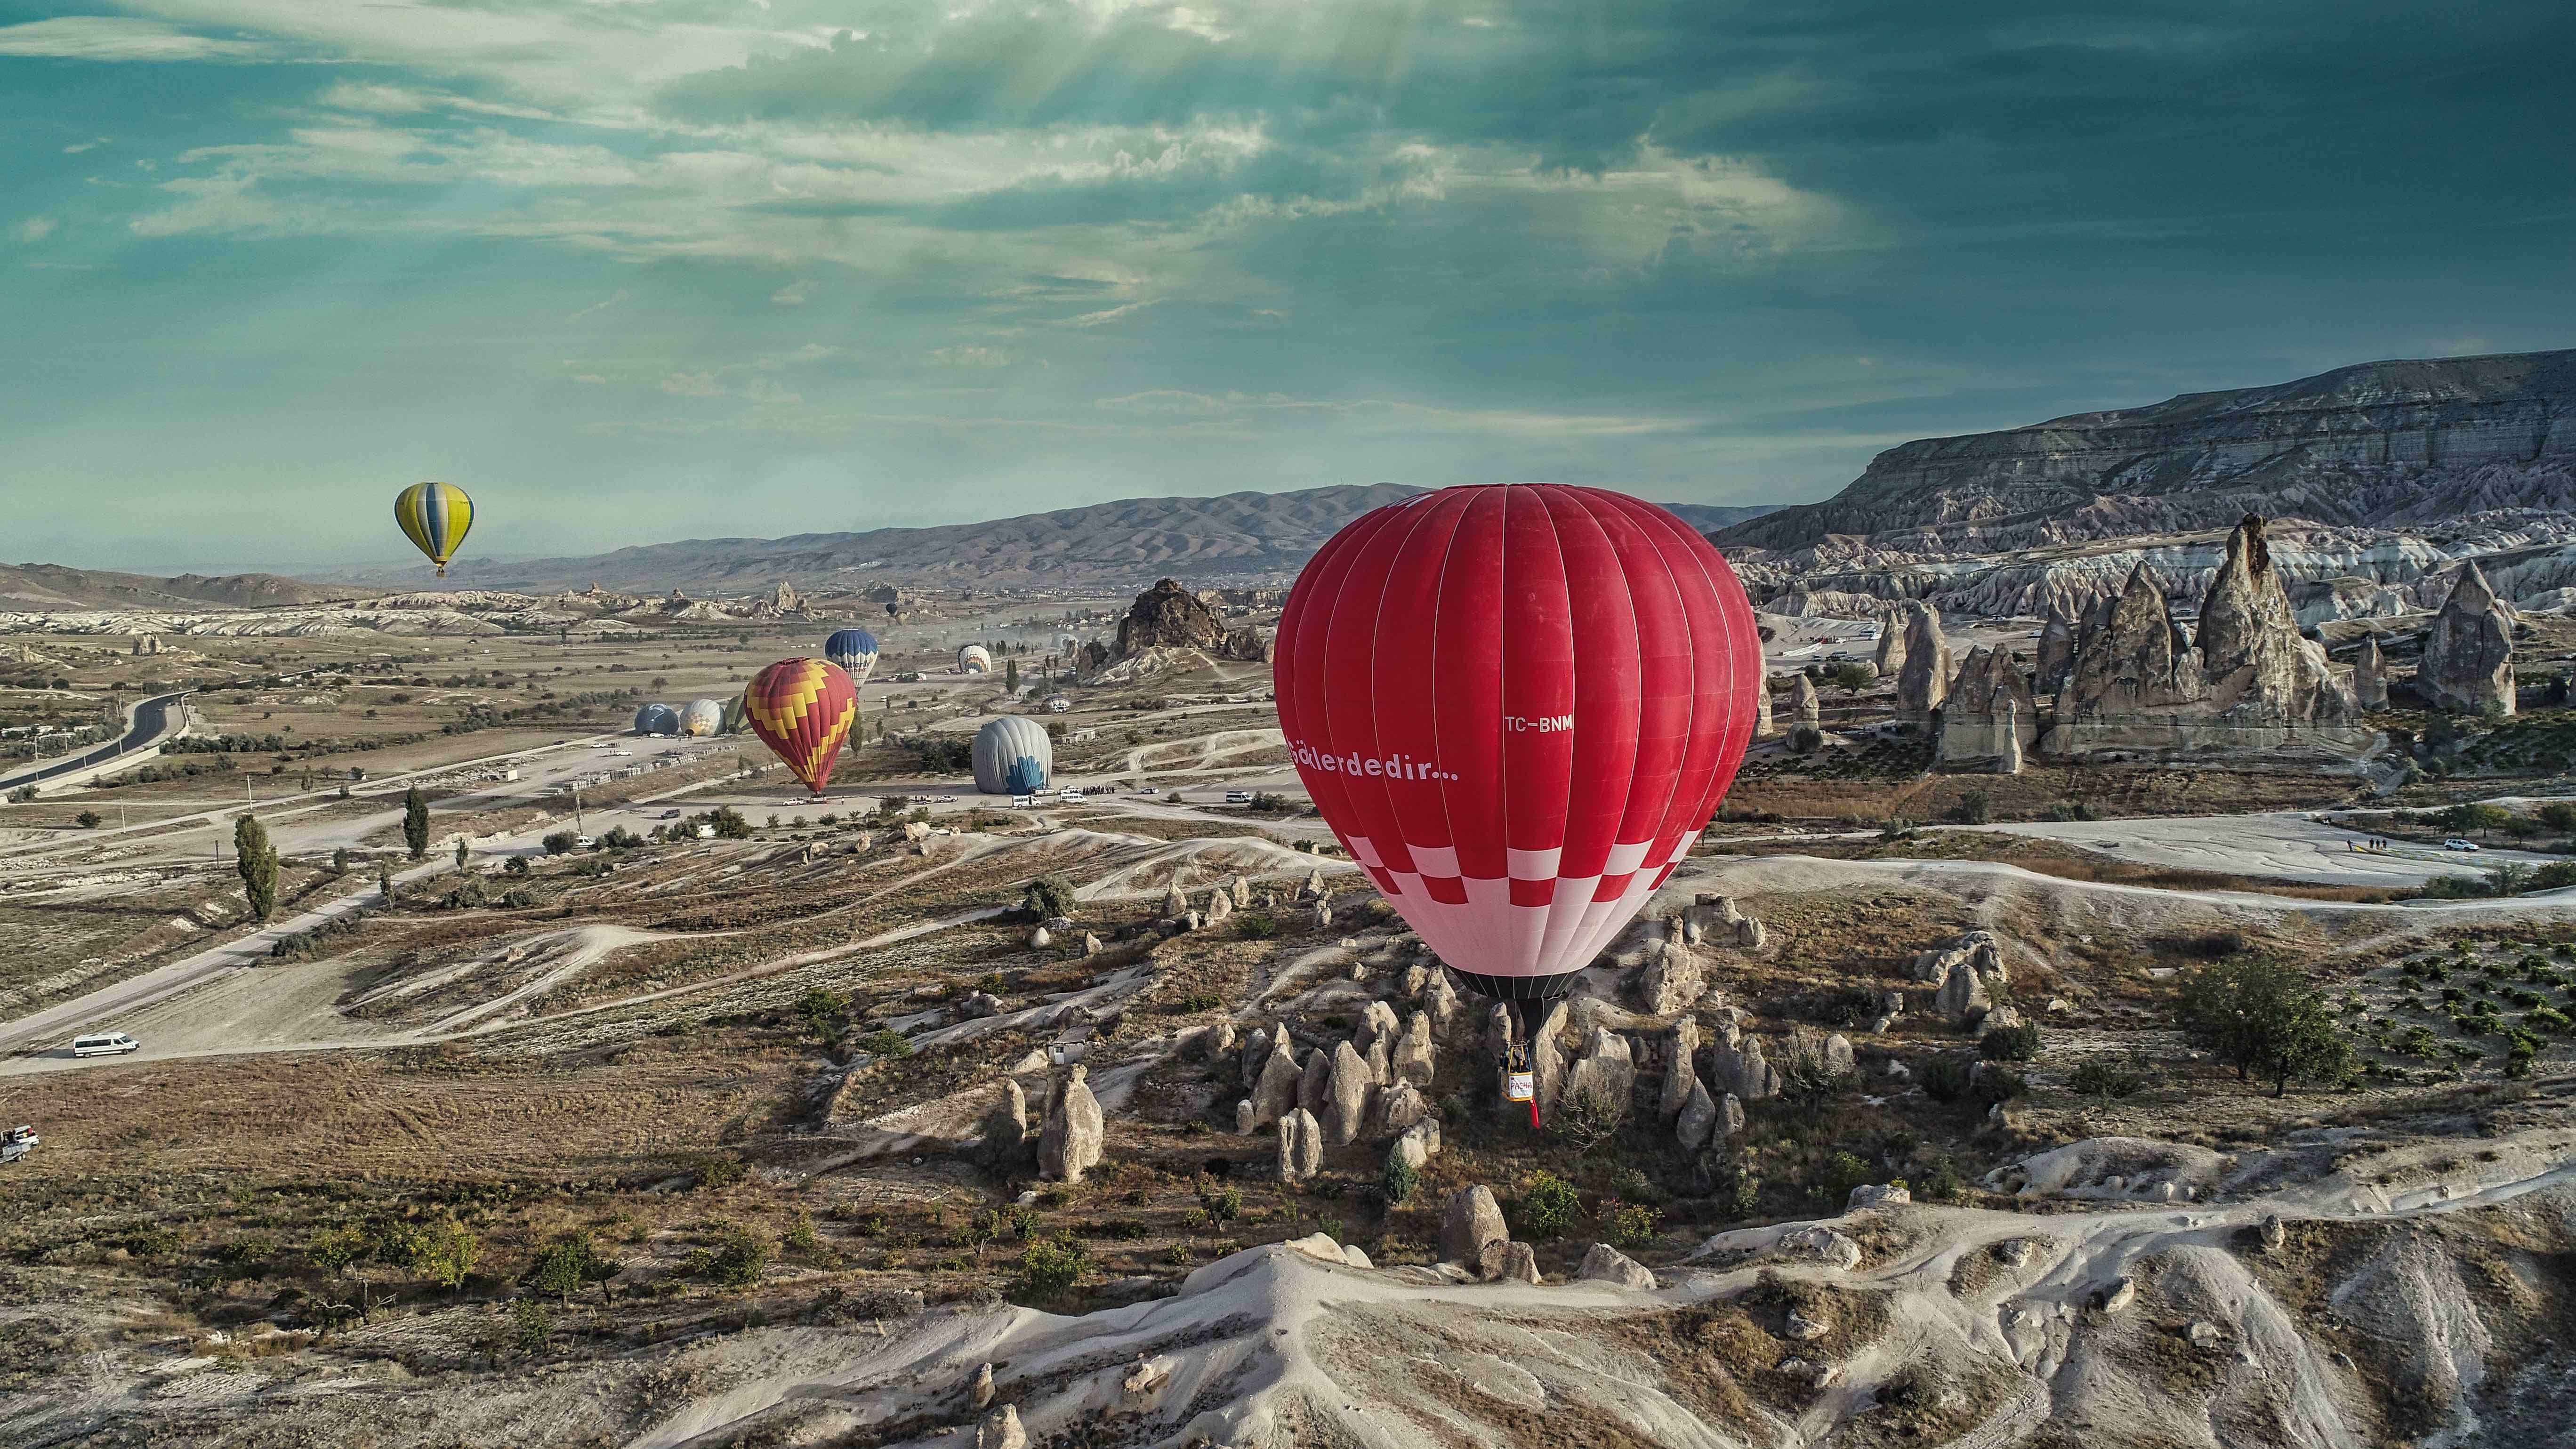 Türkiye’nin İlk Yerli ve Milli Sıcak Hava Balonu Pasha Balon ve Sektöre Bir Bakış!